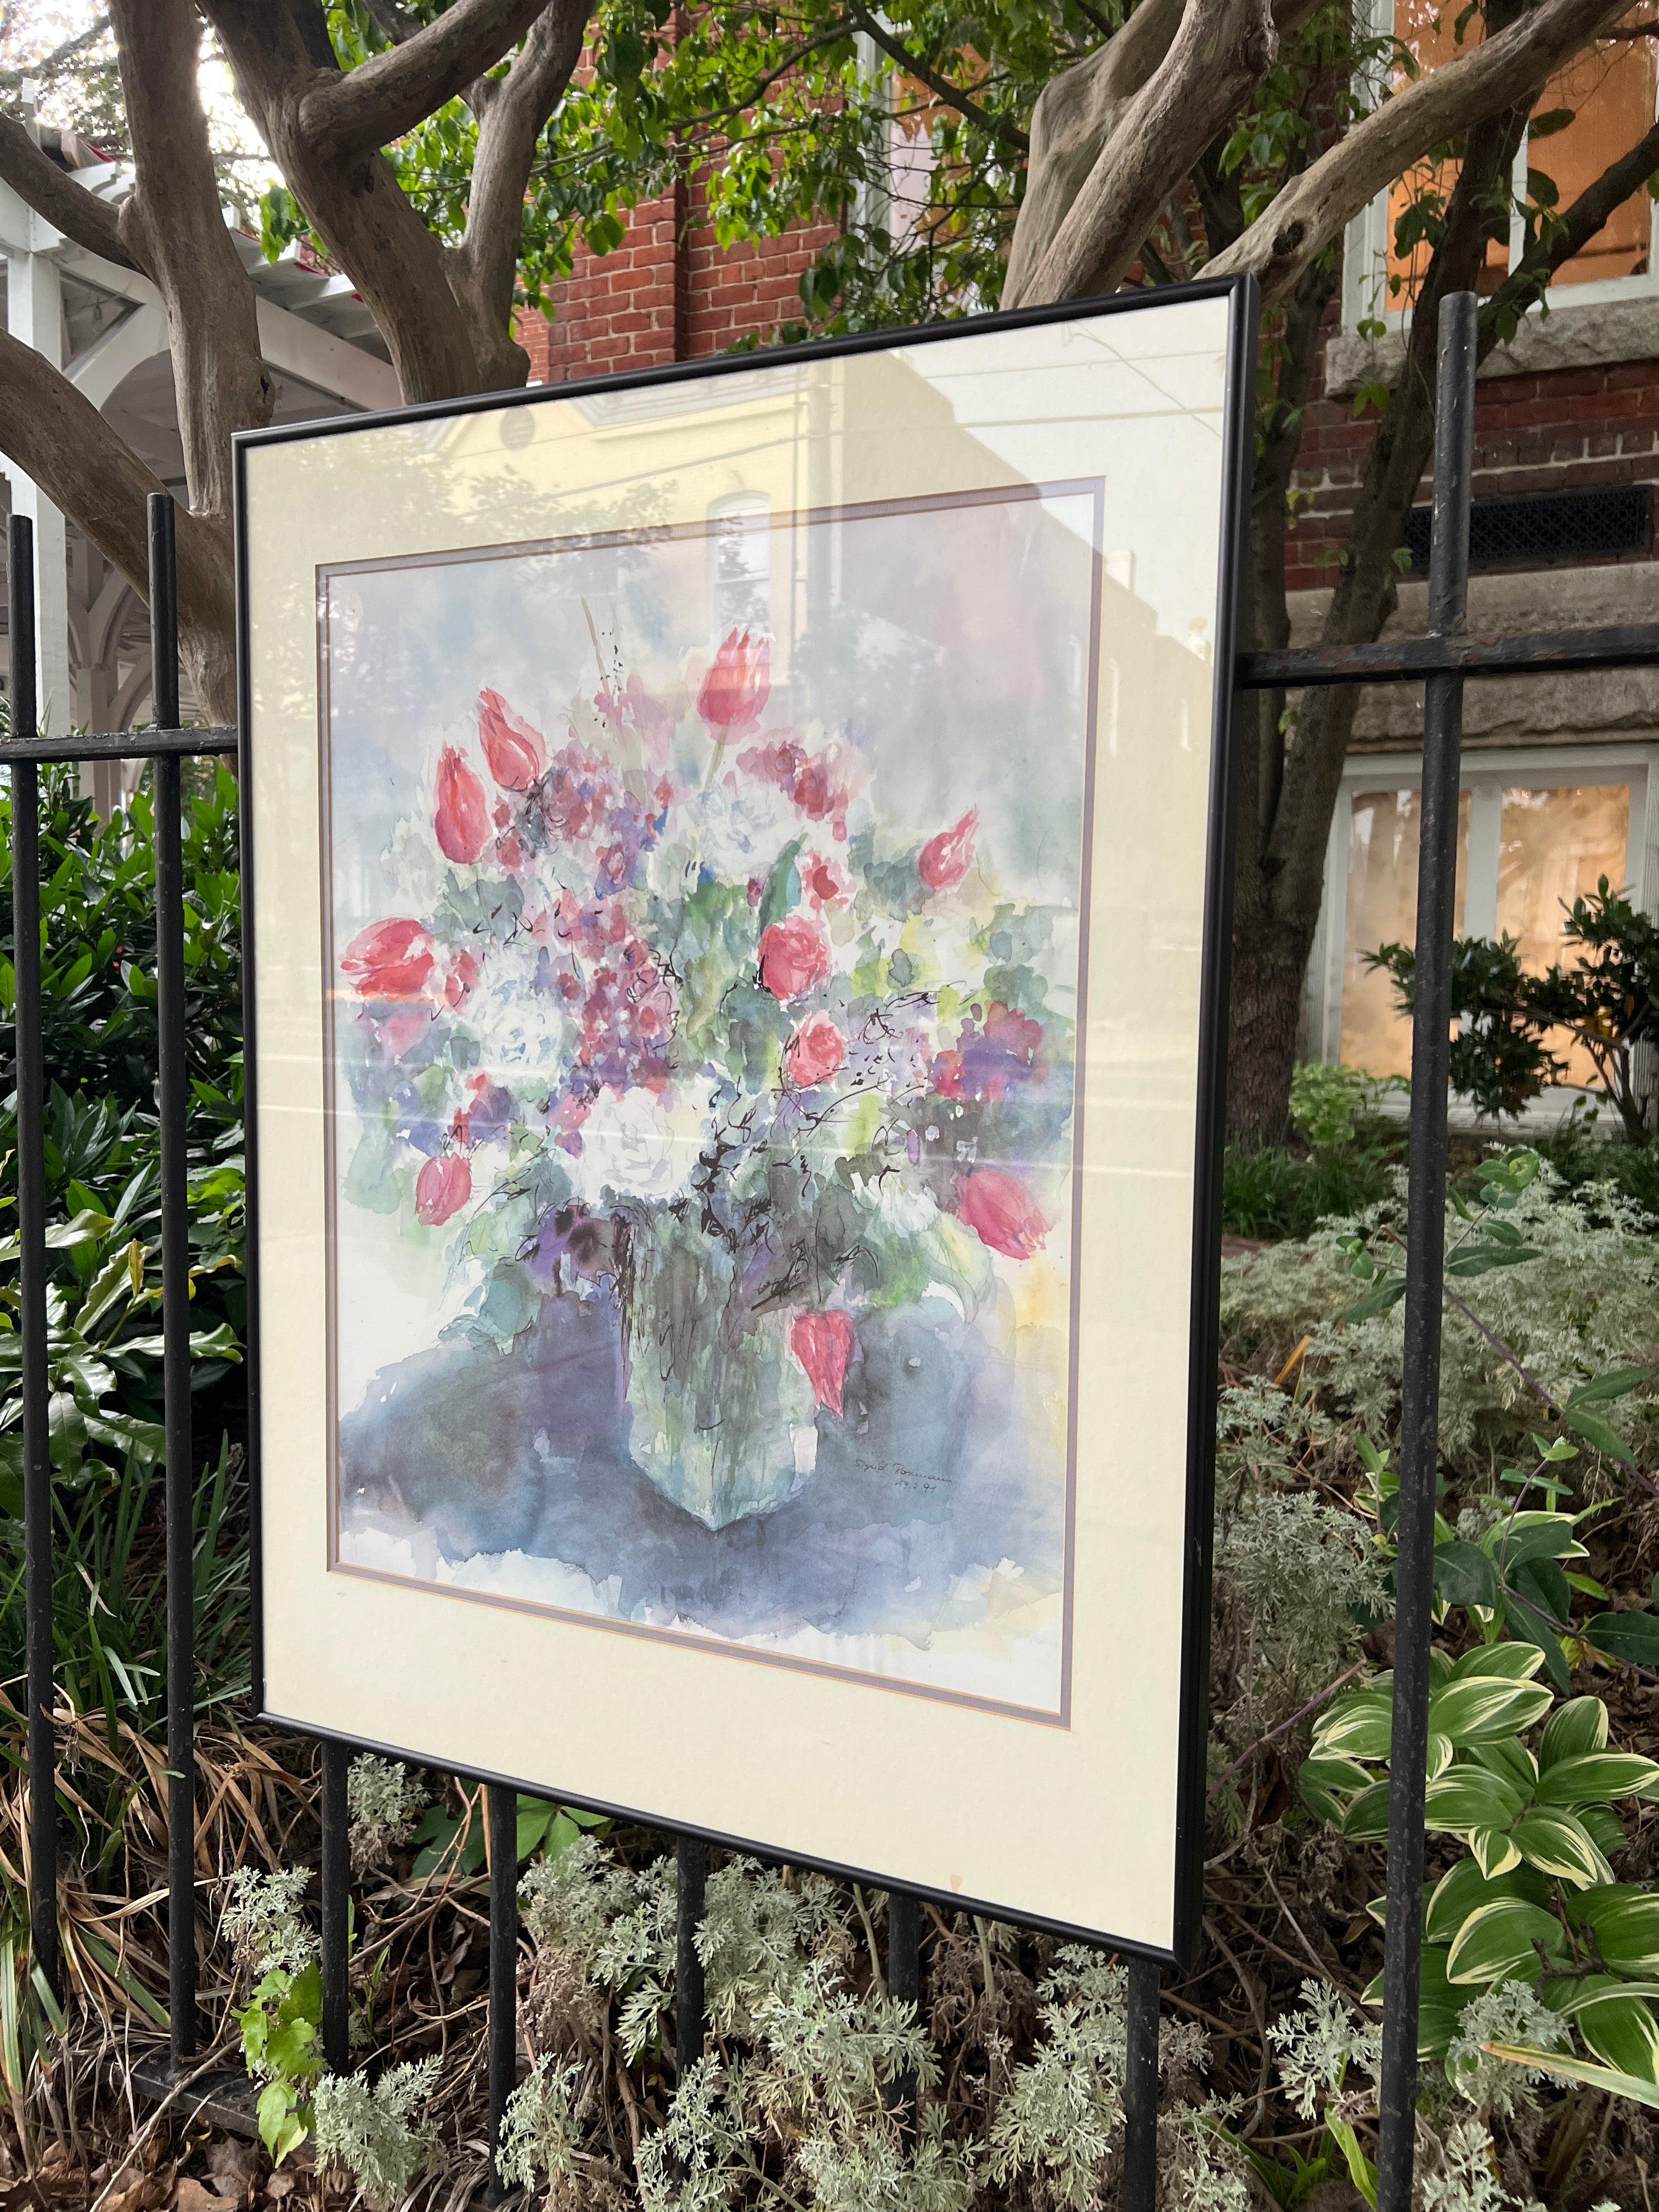 Floral Bouquet Framed Print